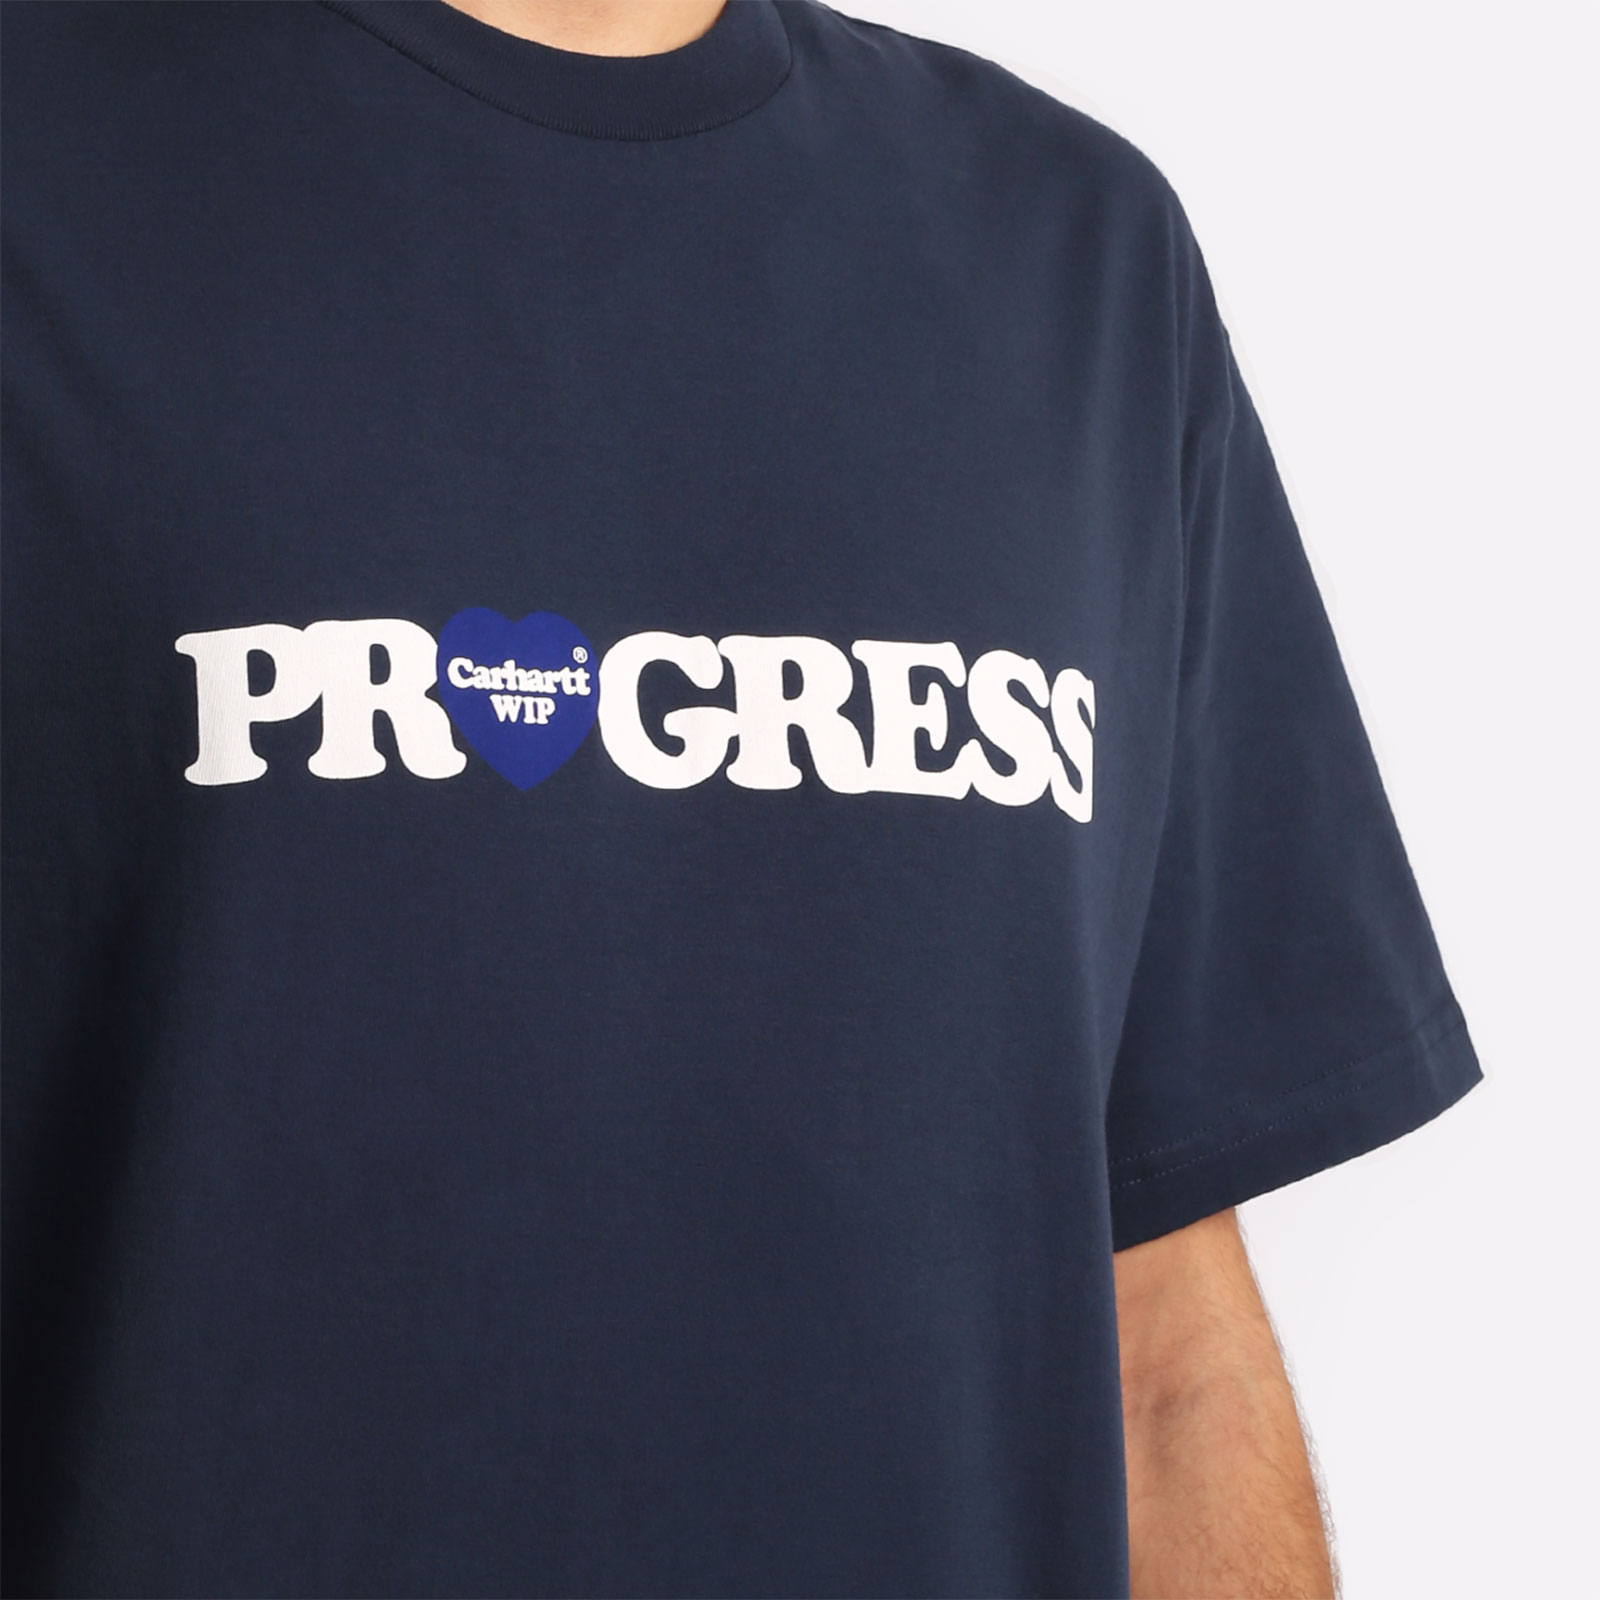 мужская футболка Carhartt WIP S/S I Heart Progress T-Shirt  (I032378-blue)  - цена, описание, фото 3